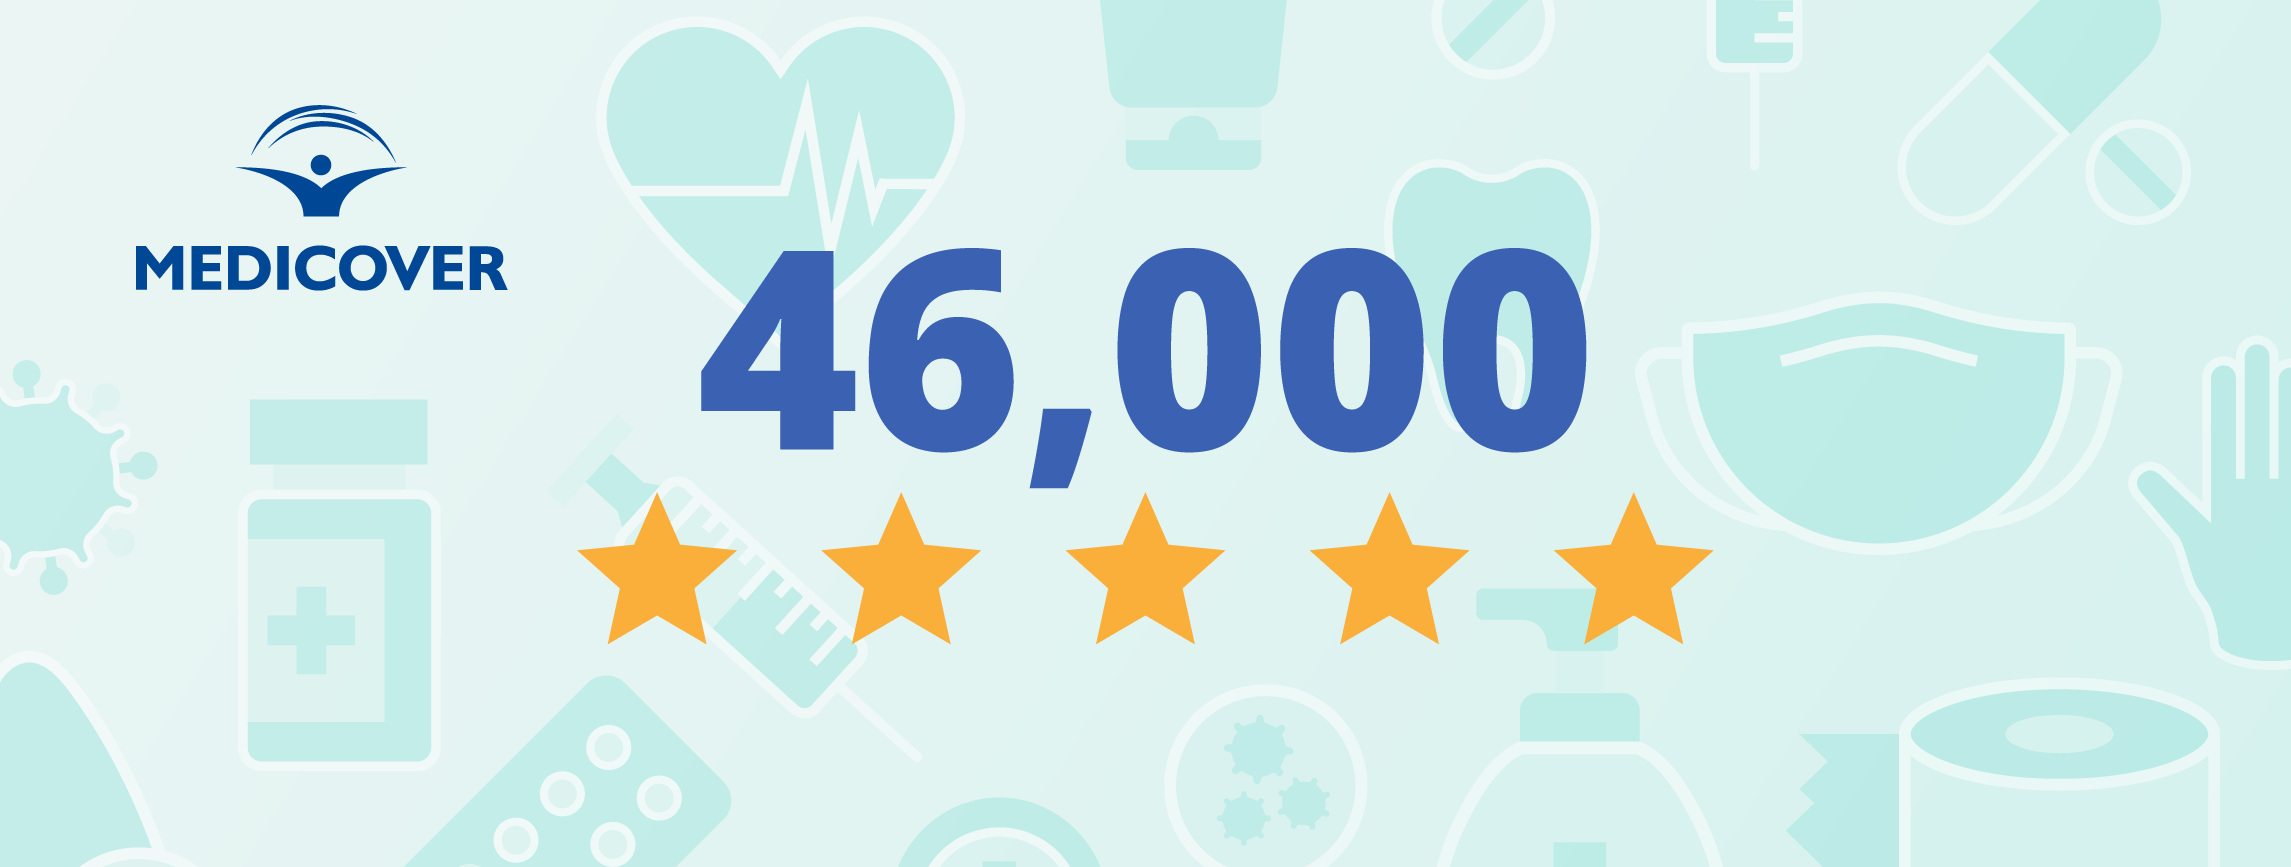 Come Medicover Romania ha raccolto 46.000 recensioni innovando il programma di feedback dei pazienti